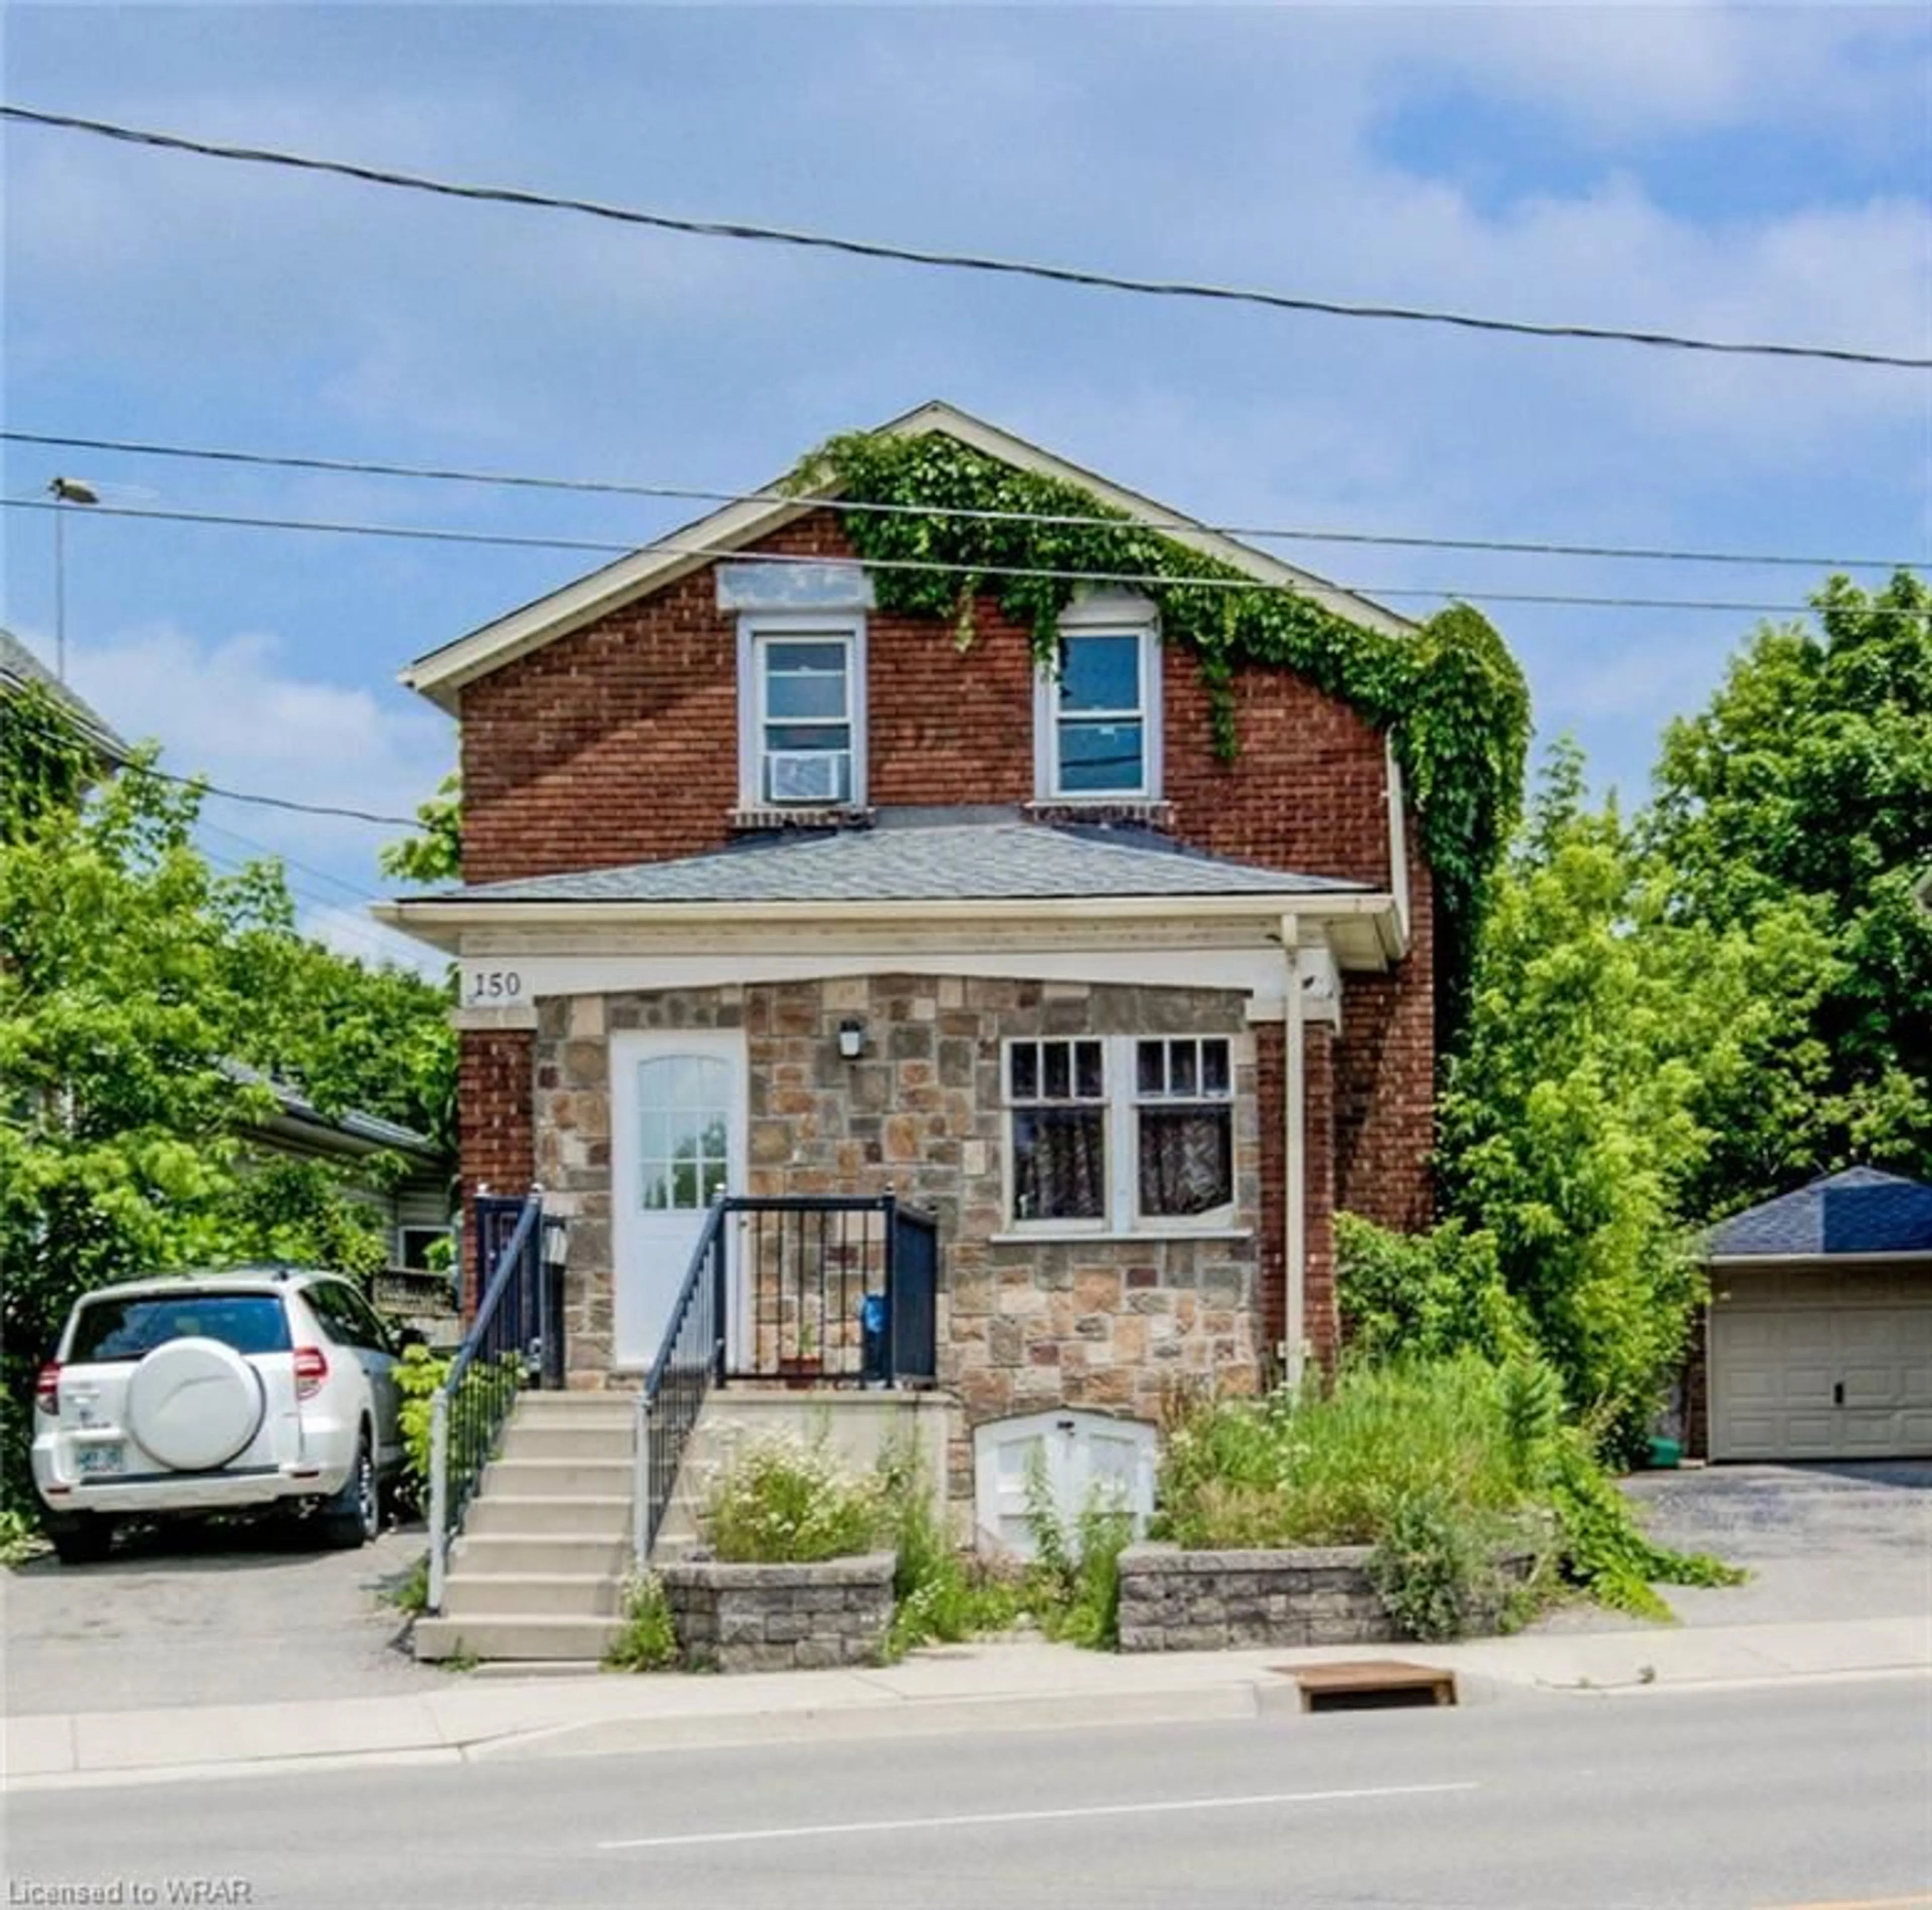 Frontside or backside of a home for 150 Weber St, Kitchener Ontario N2H 1C9